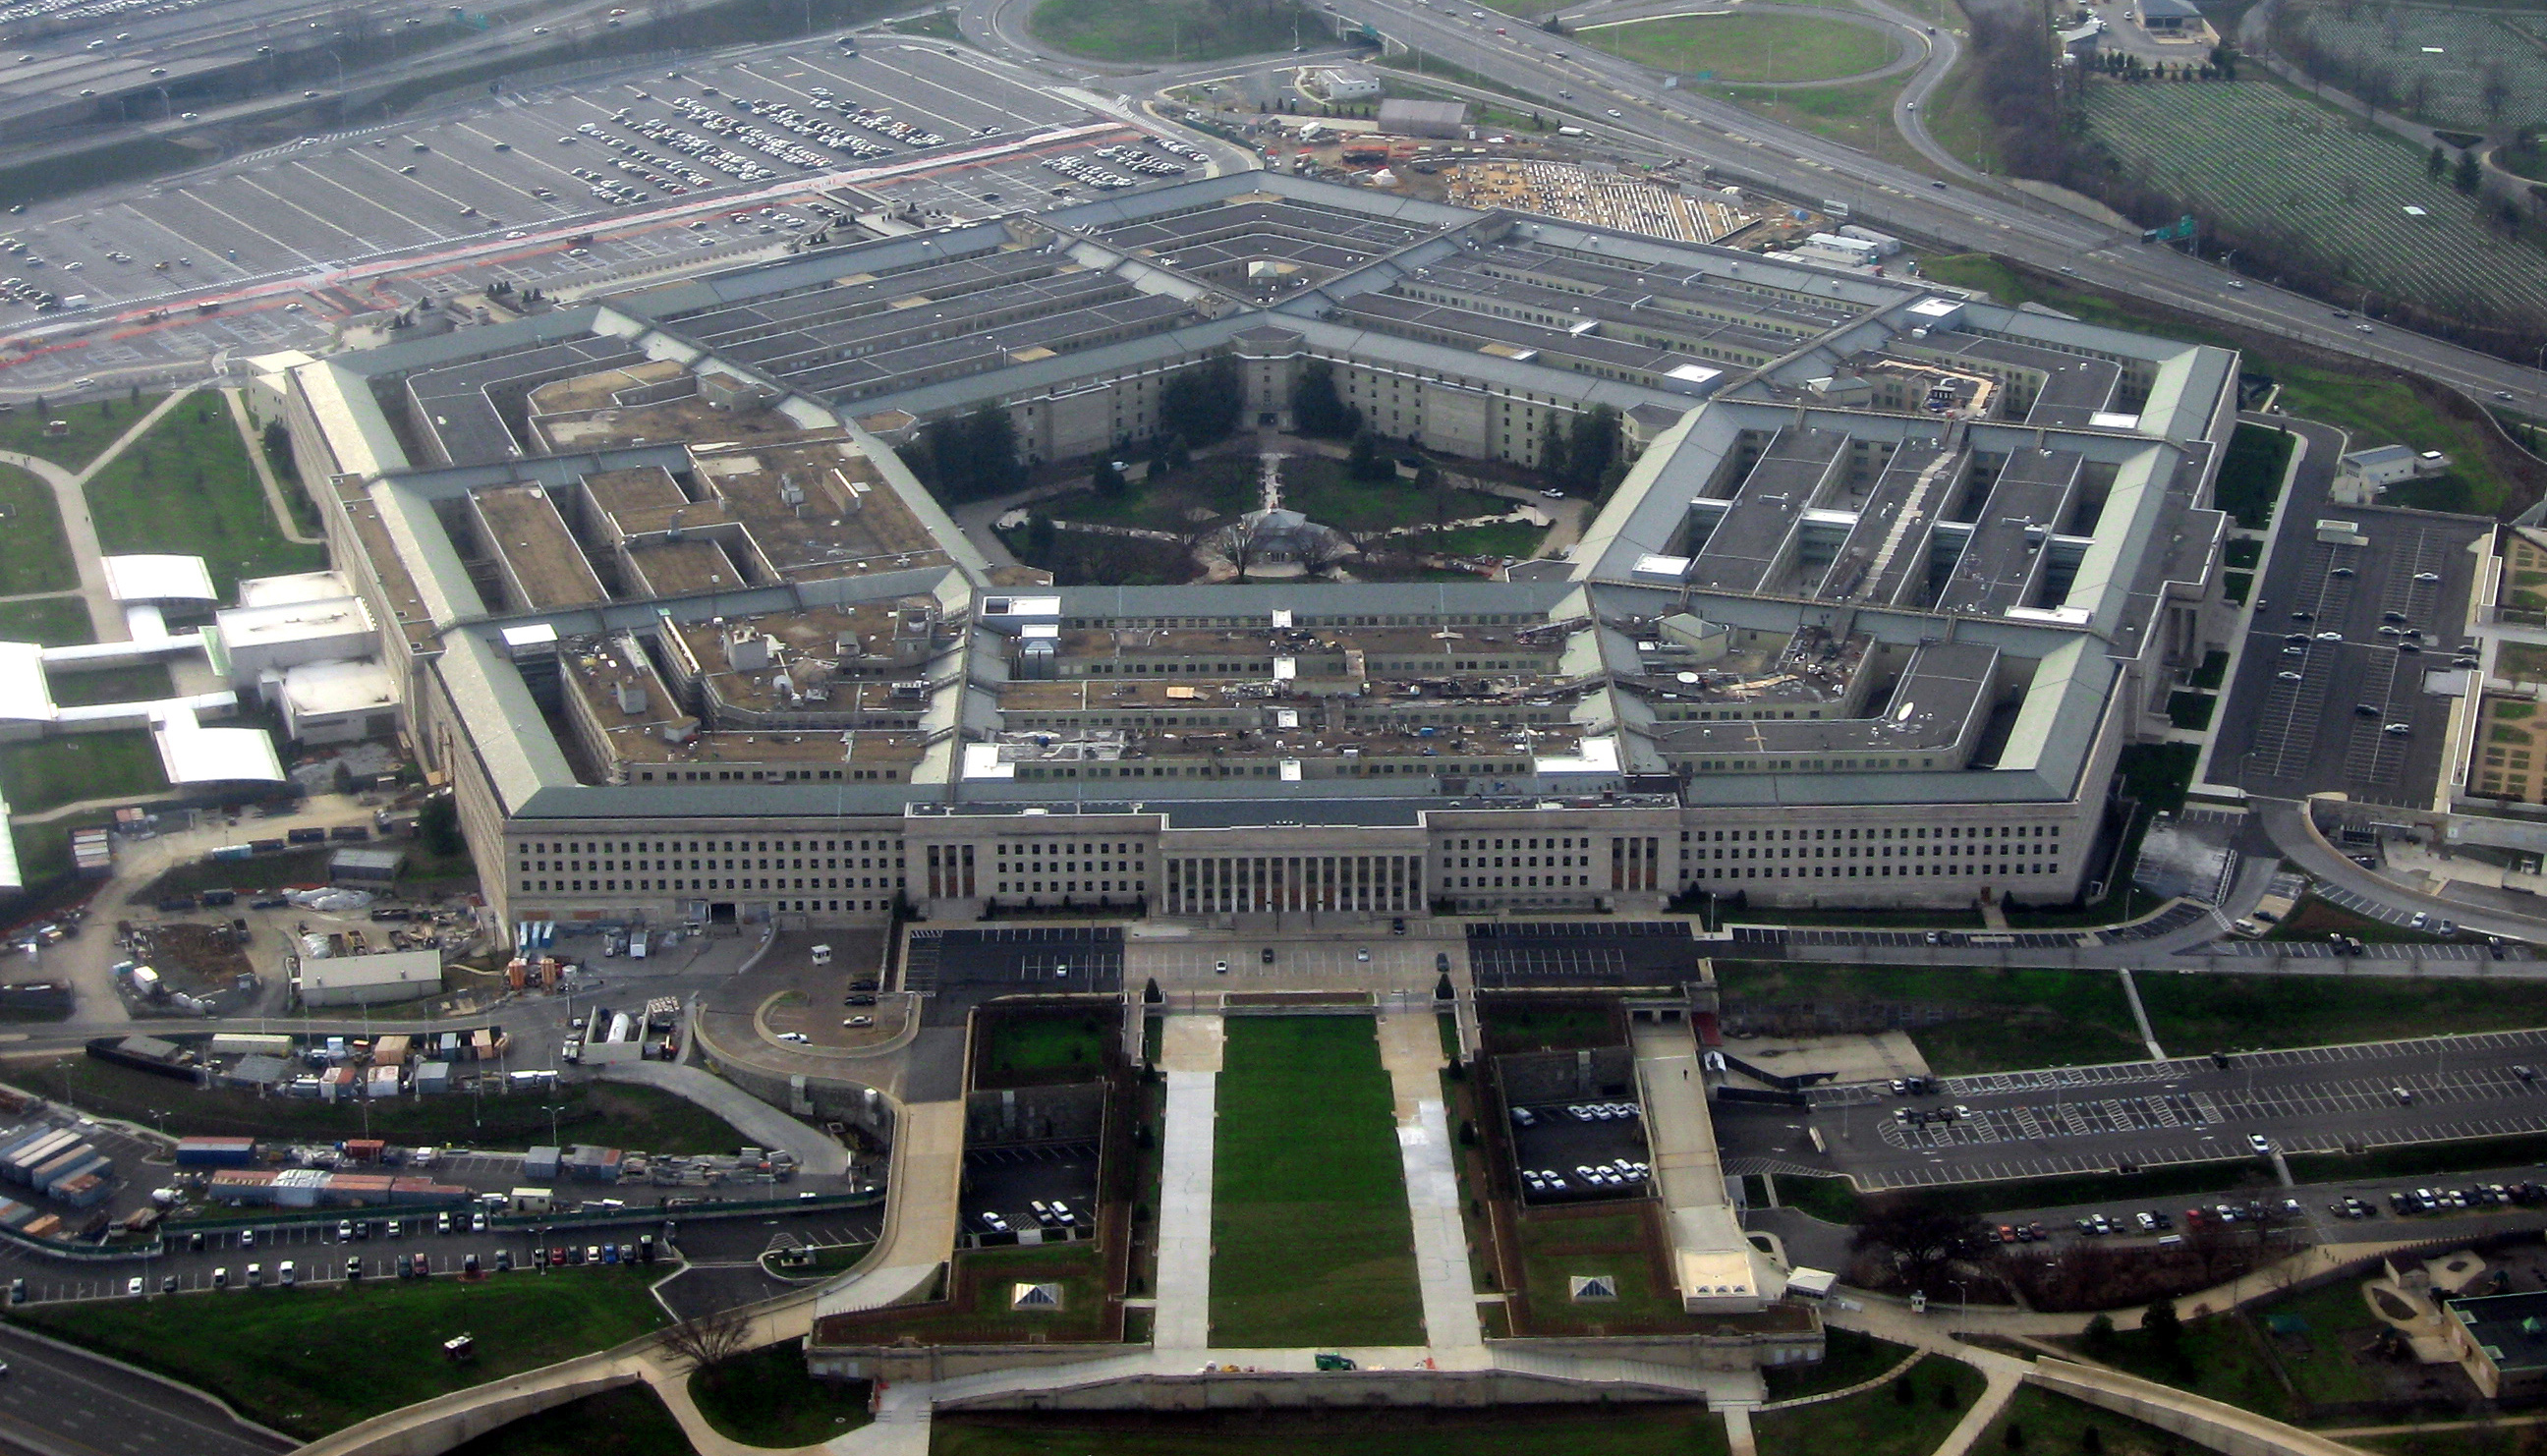 Pentagon yetkilisi: UFO'ların varlığından şüphe yok